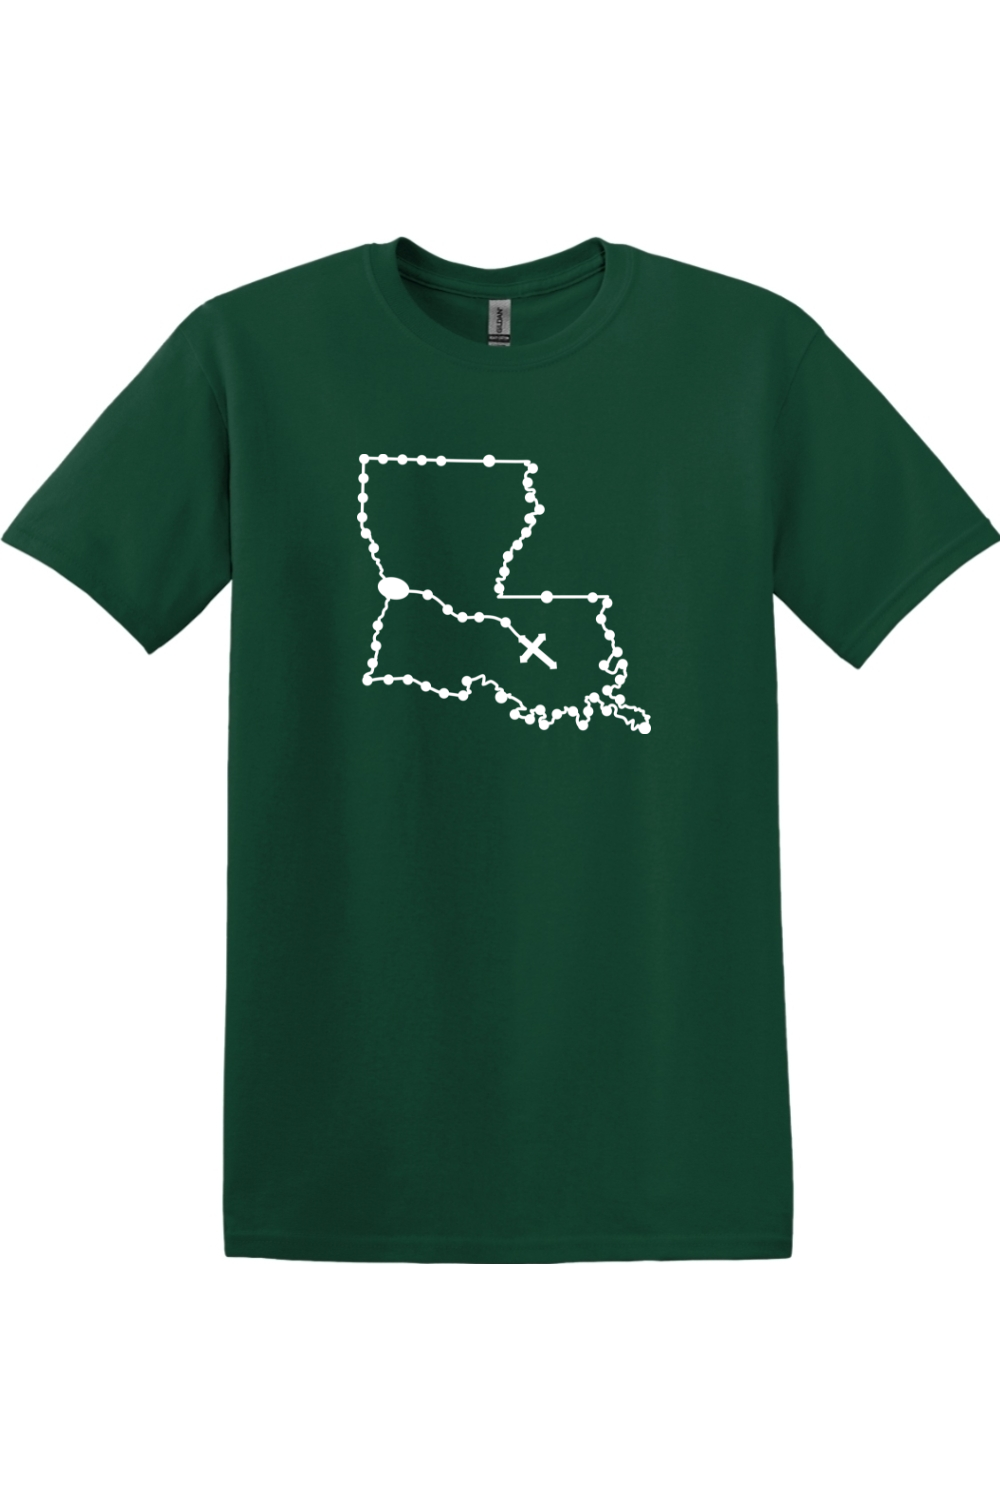 Louisiana Rosary Adult T-shirt